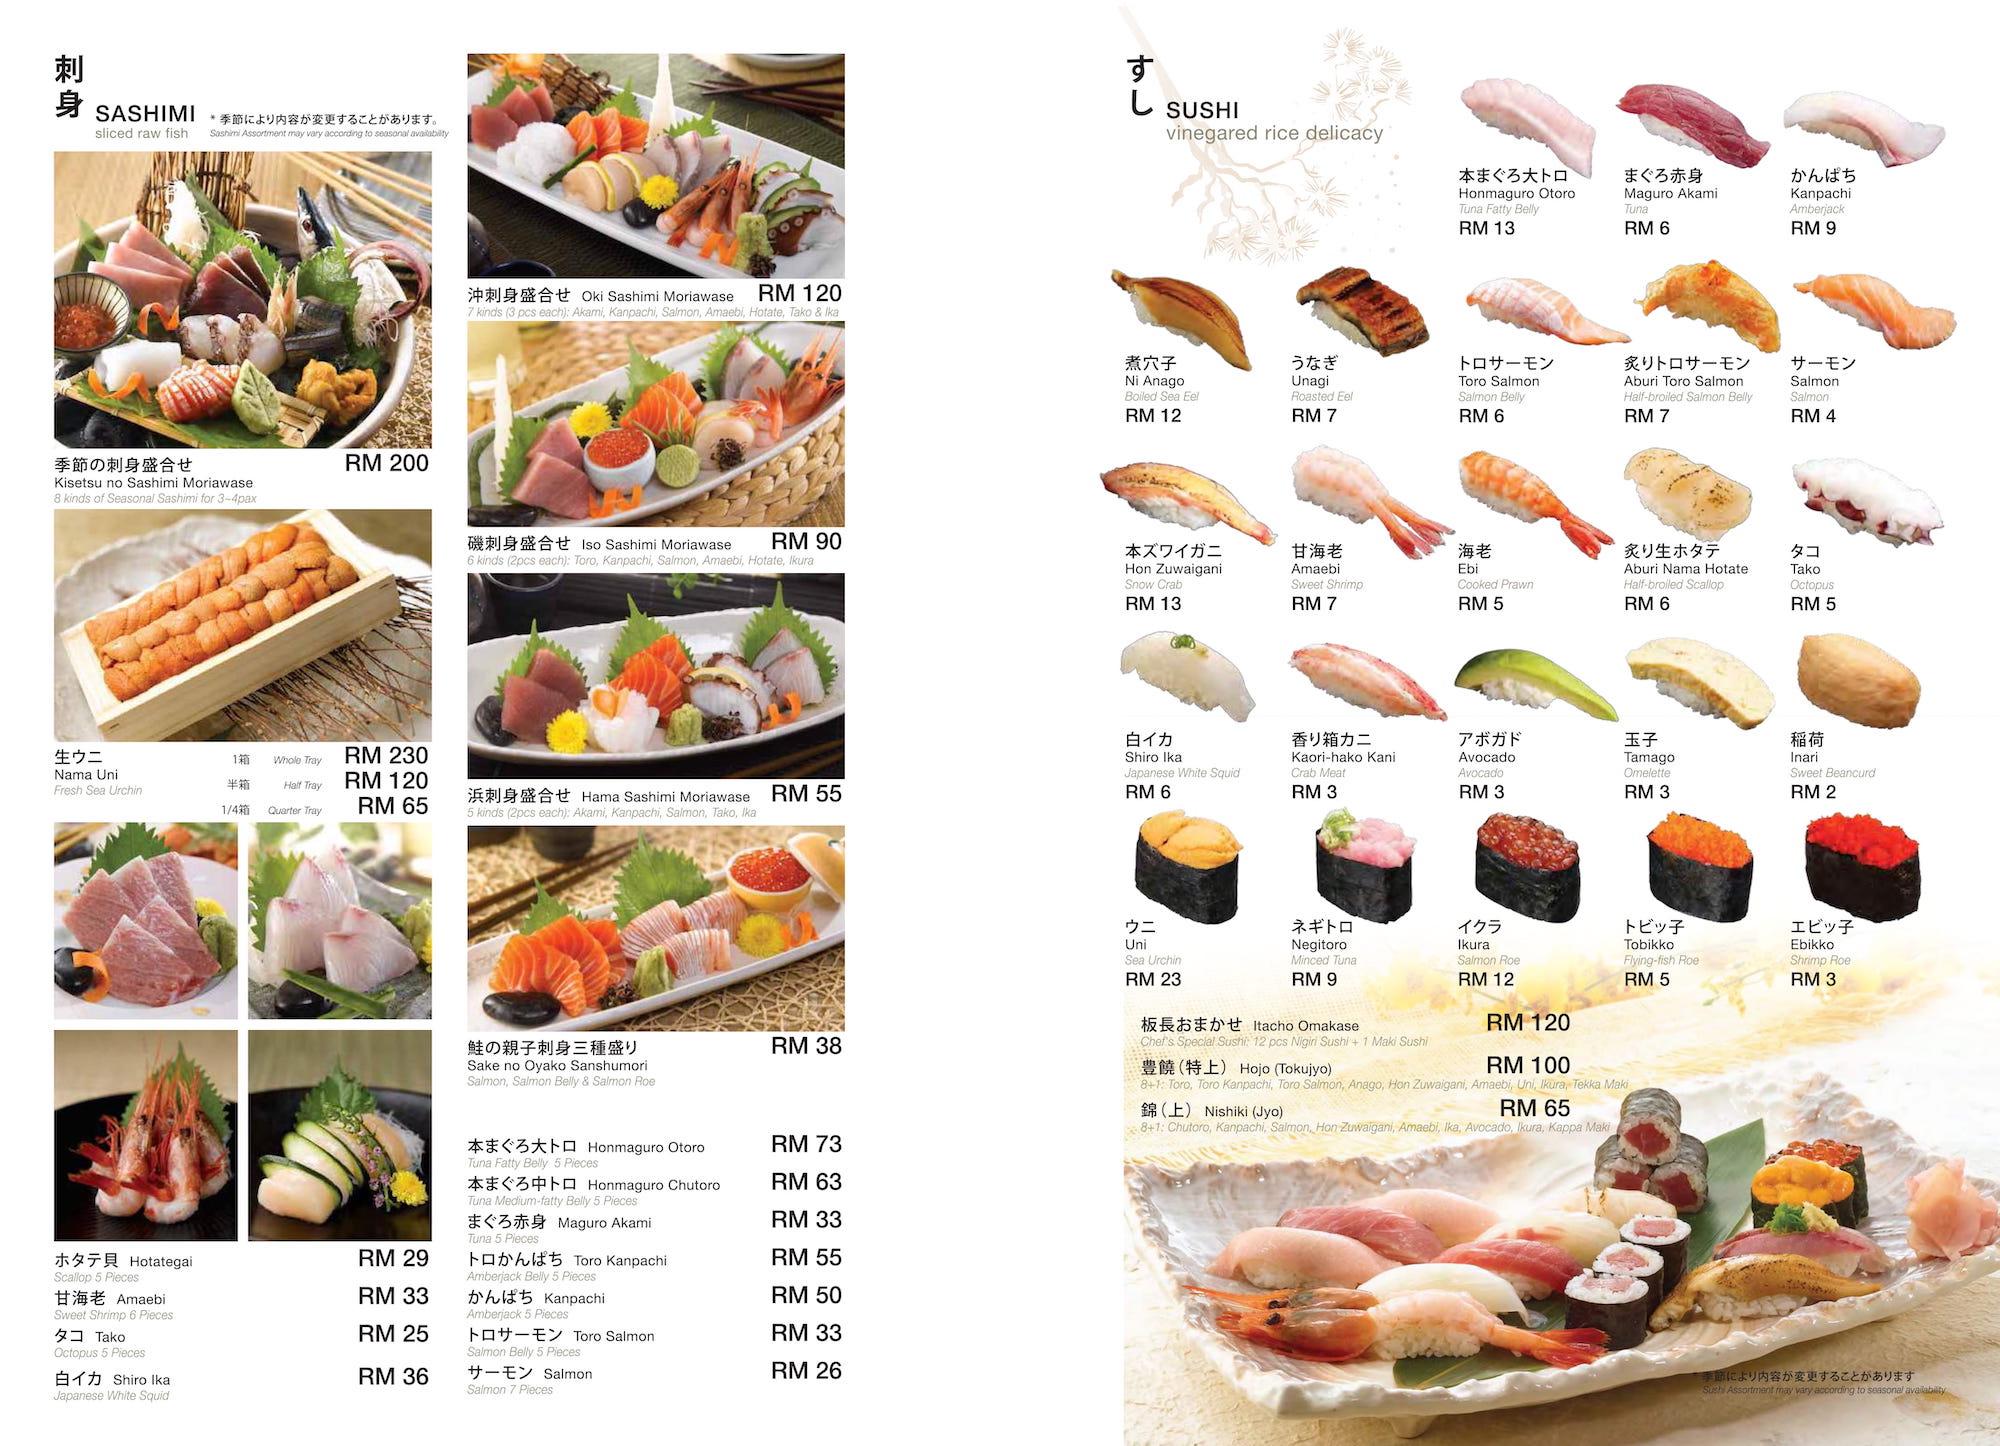 sashimi sushi Rakuzen Malaysia